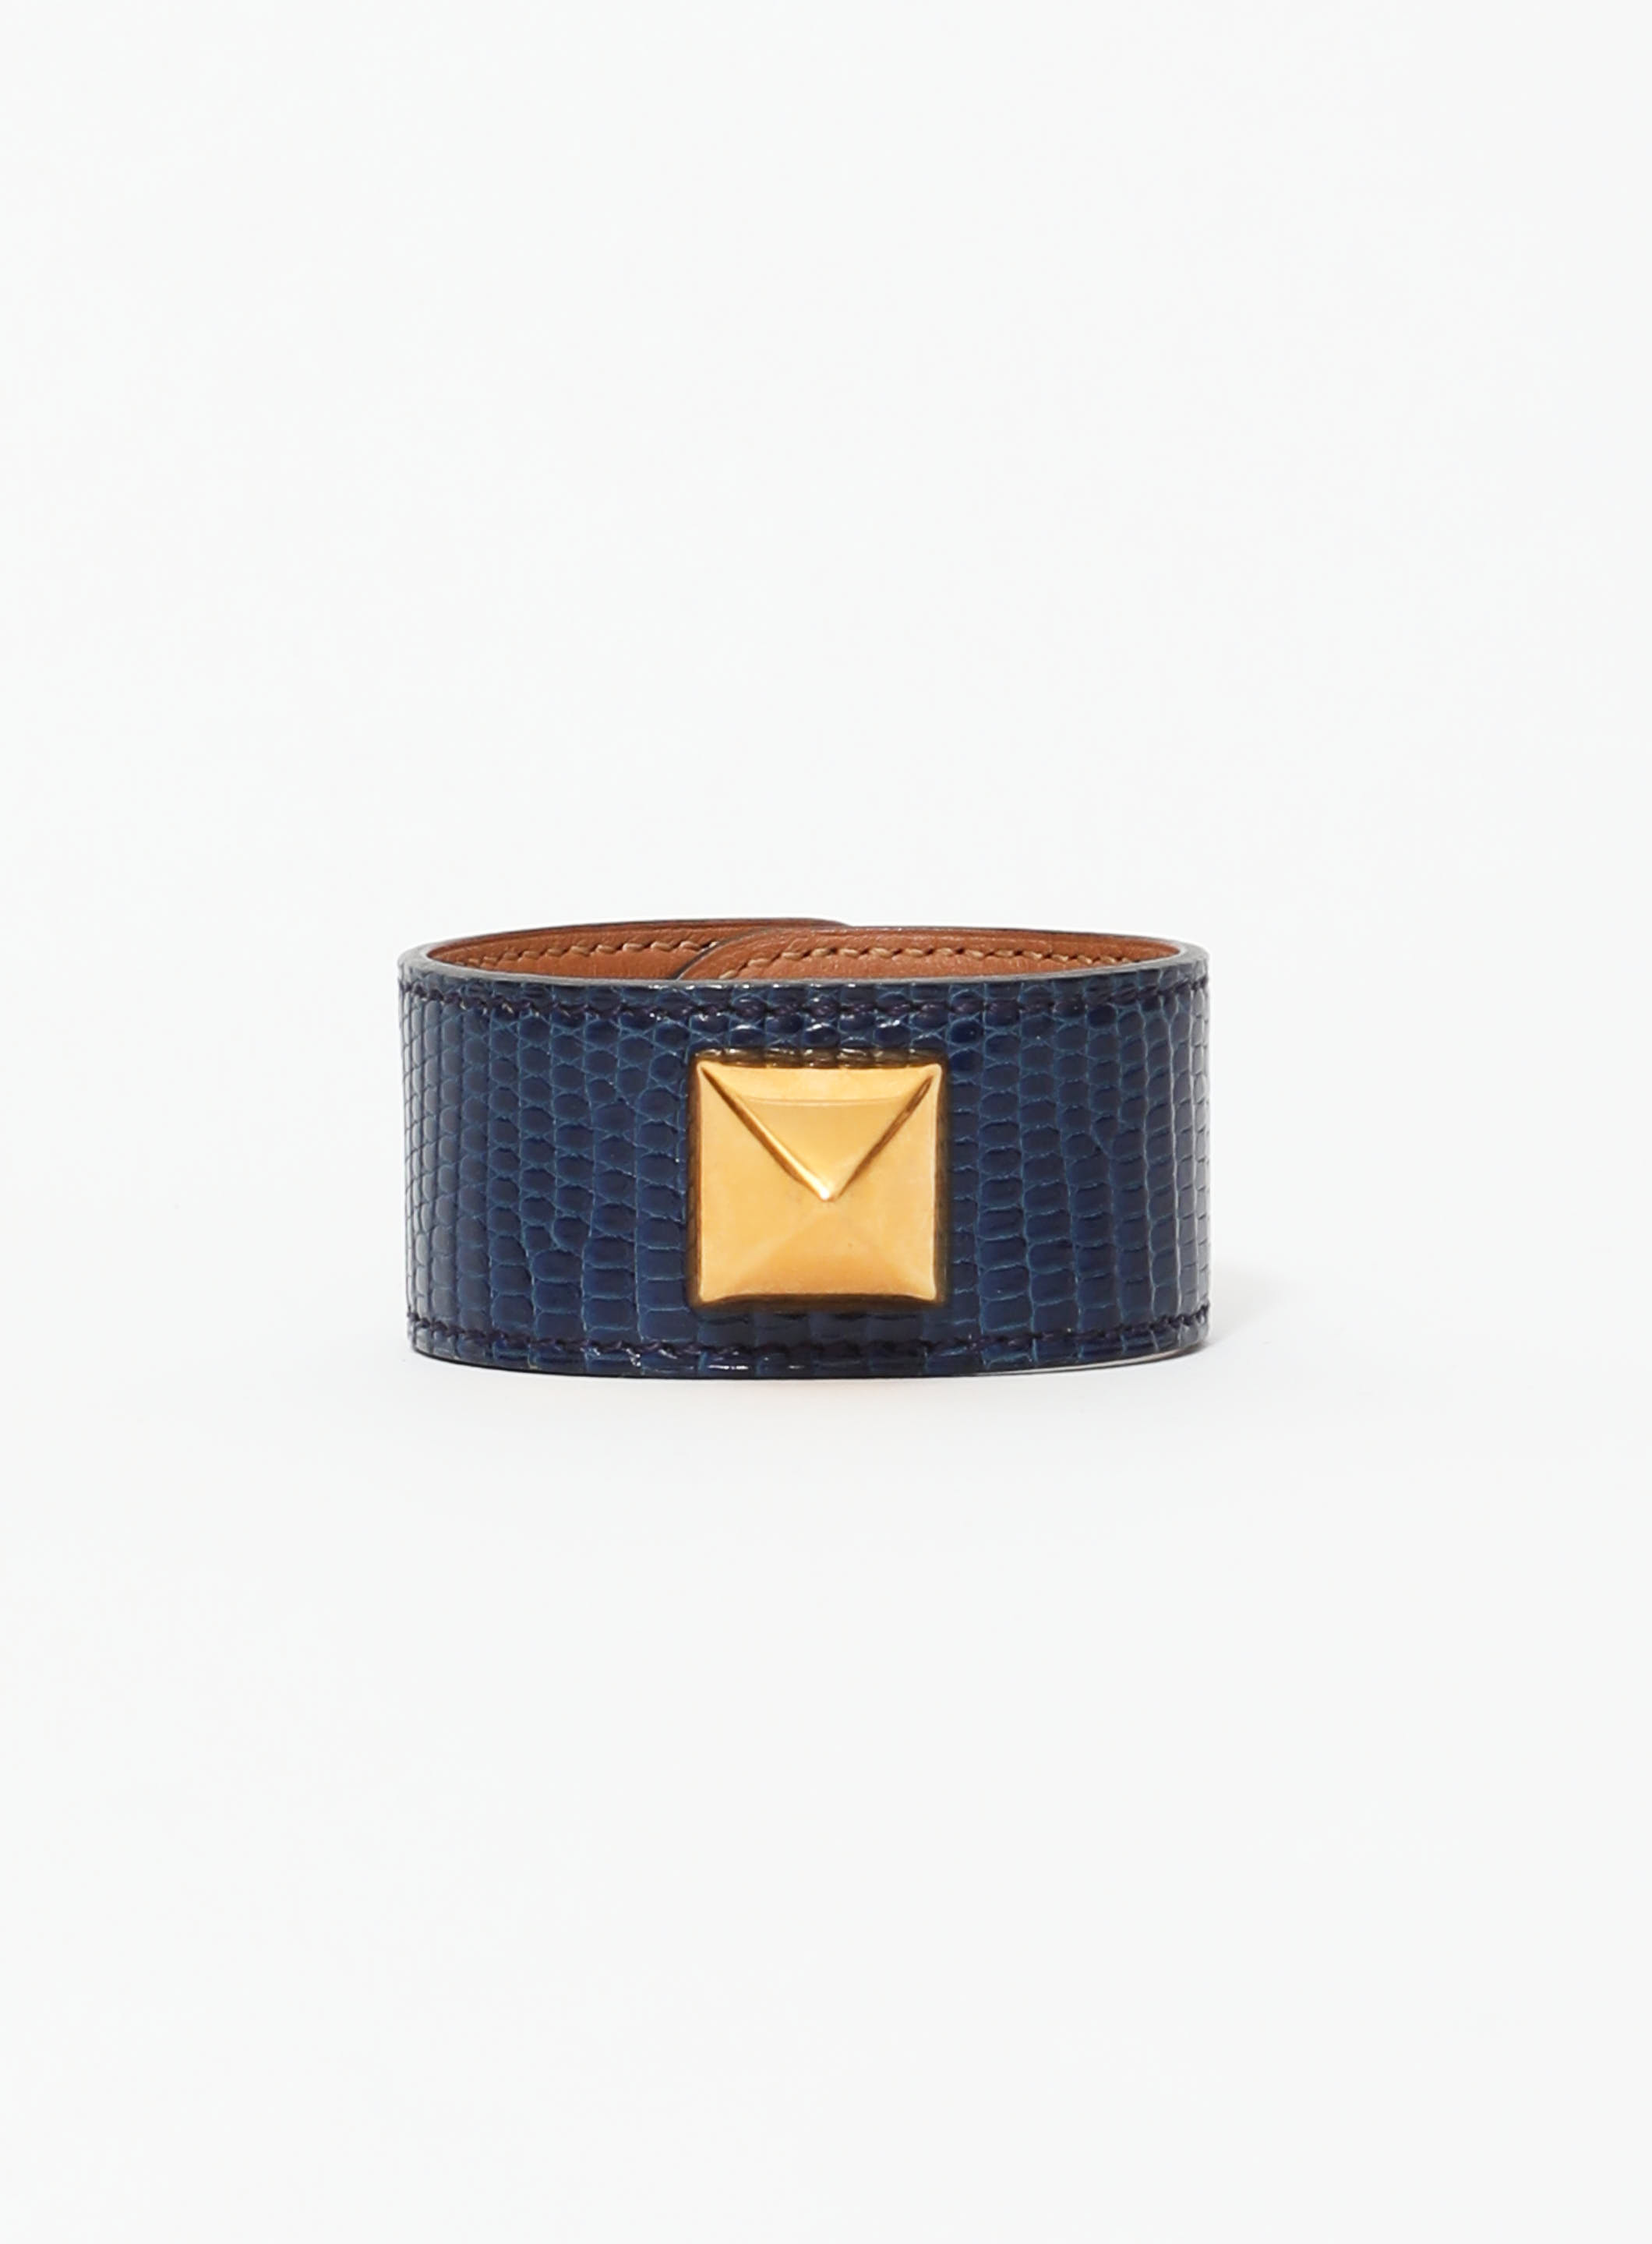 Louis Vuitton - Authenticated Clous Bracelet - Leather Blue for Women, Very Good Condition